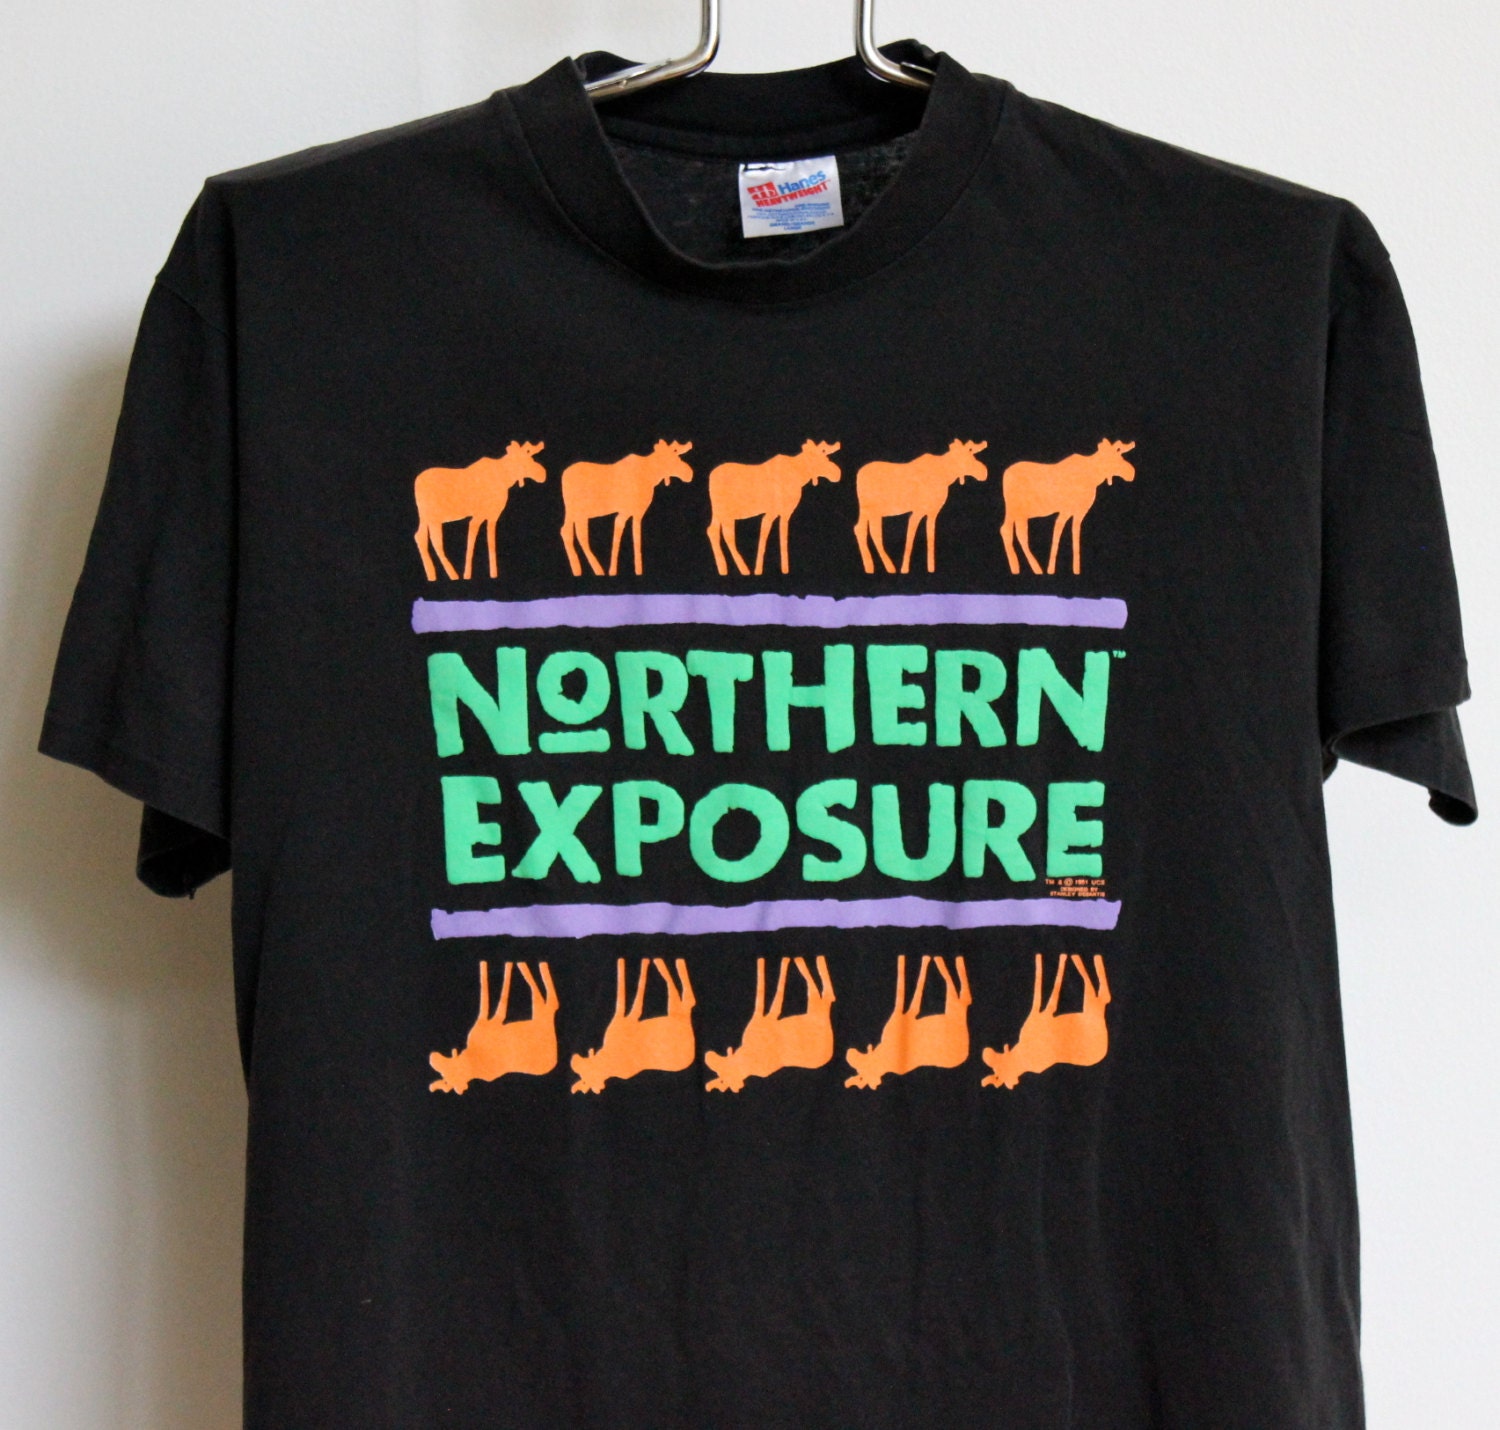 Northern exposure t shirt